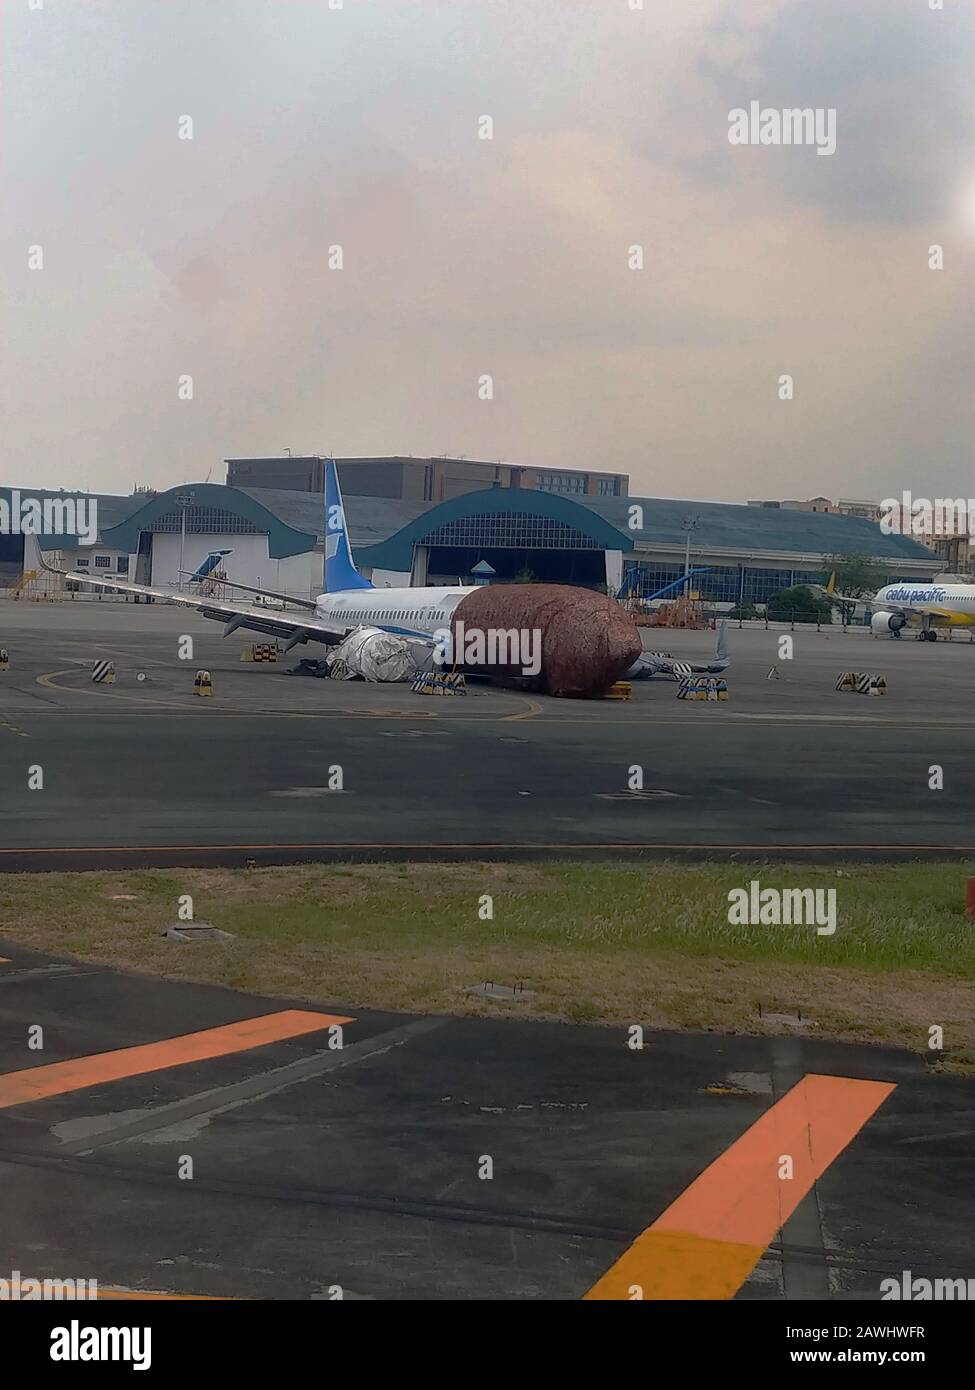 A damaged aircraft at Puerto Princesa airport in Palawan, Philippines Stock Photo